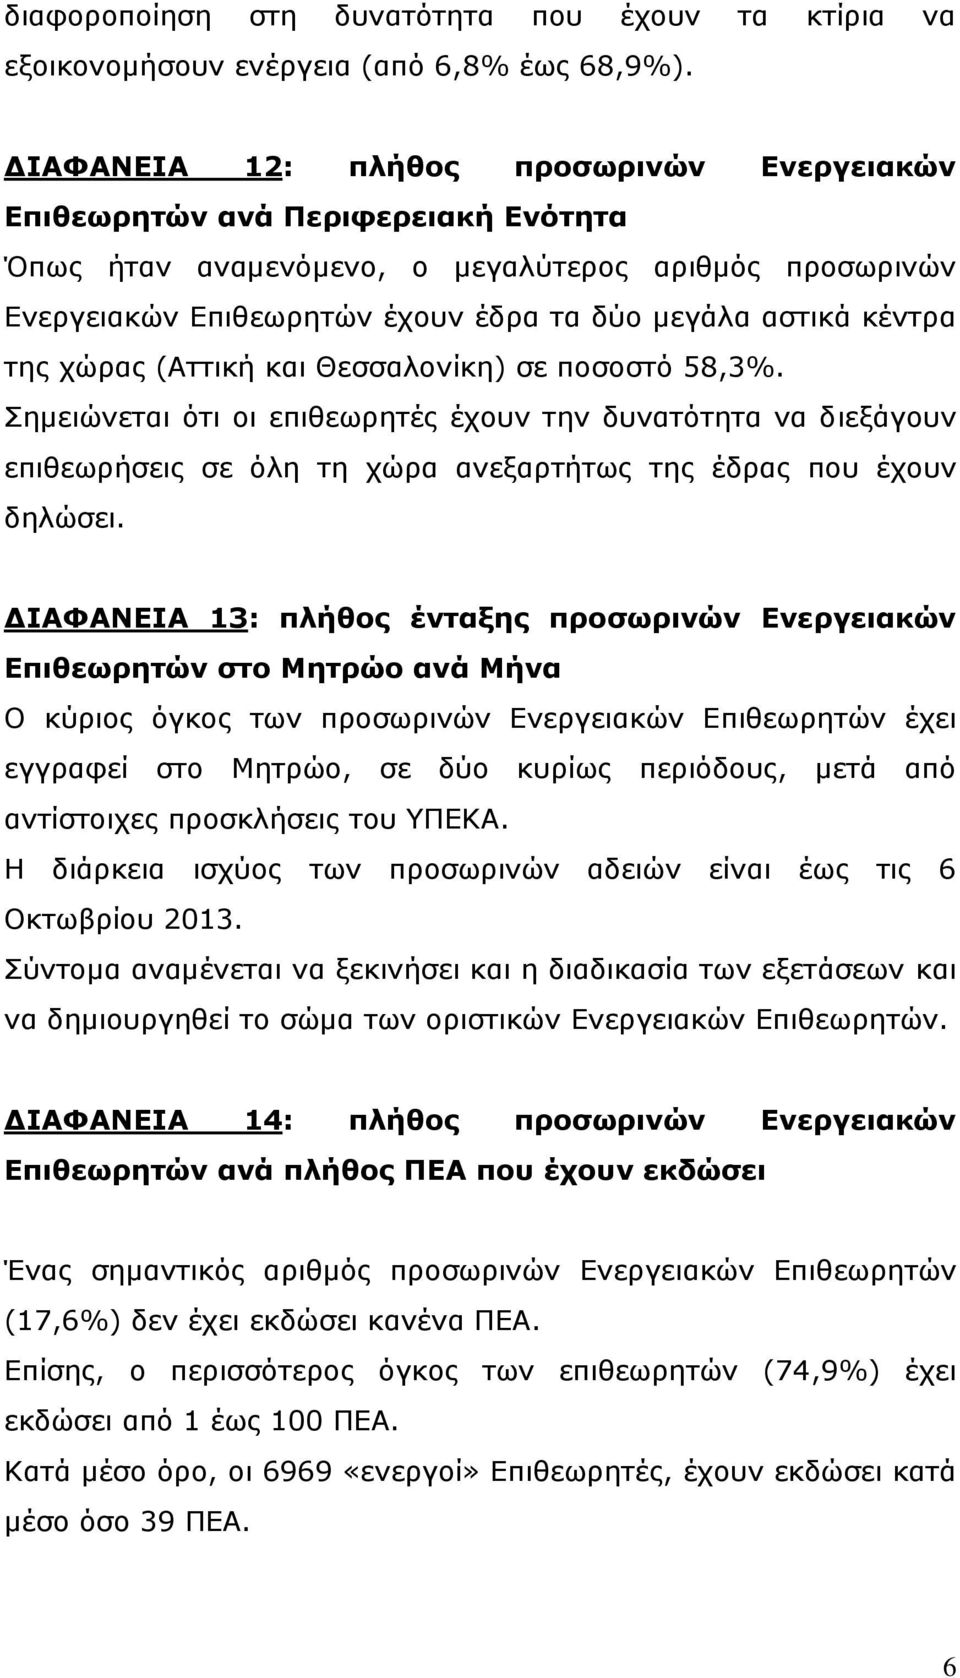 της χώρας (Αττική και Θεσσαλονίκη) σε ποσοστό 58,3%. Σημειώνεται ότι οι επιθεωρητές έχουν την δυνατότητα να διεξάγουν επιθεωρήσεις σε όλη τη χώρα ανεξαρτήτως της έδρας που έχουν δηλώσει.